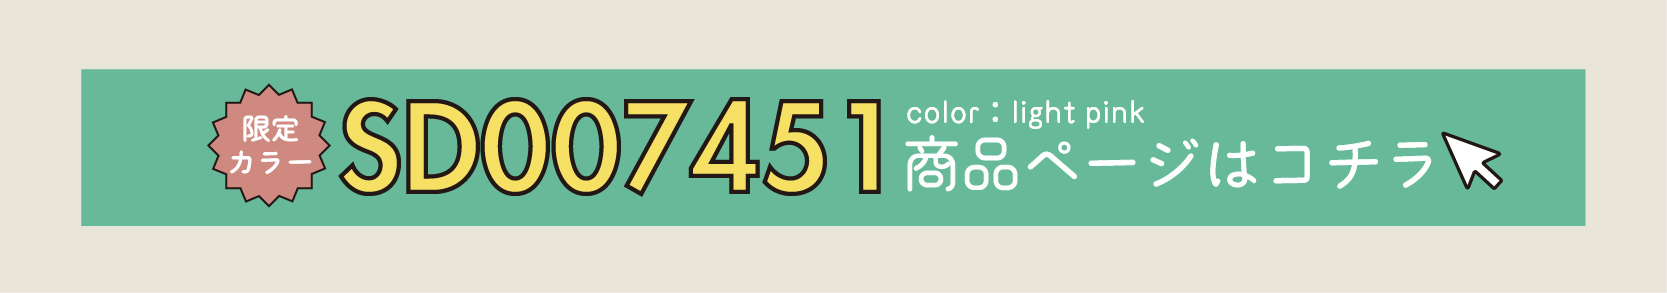 つやリボンパンプ(sd007451) 限定カラー【ライトピンク】商品ページはこちらをタップしてください。